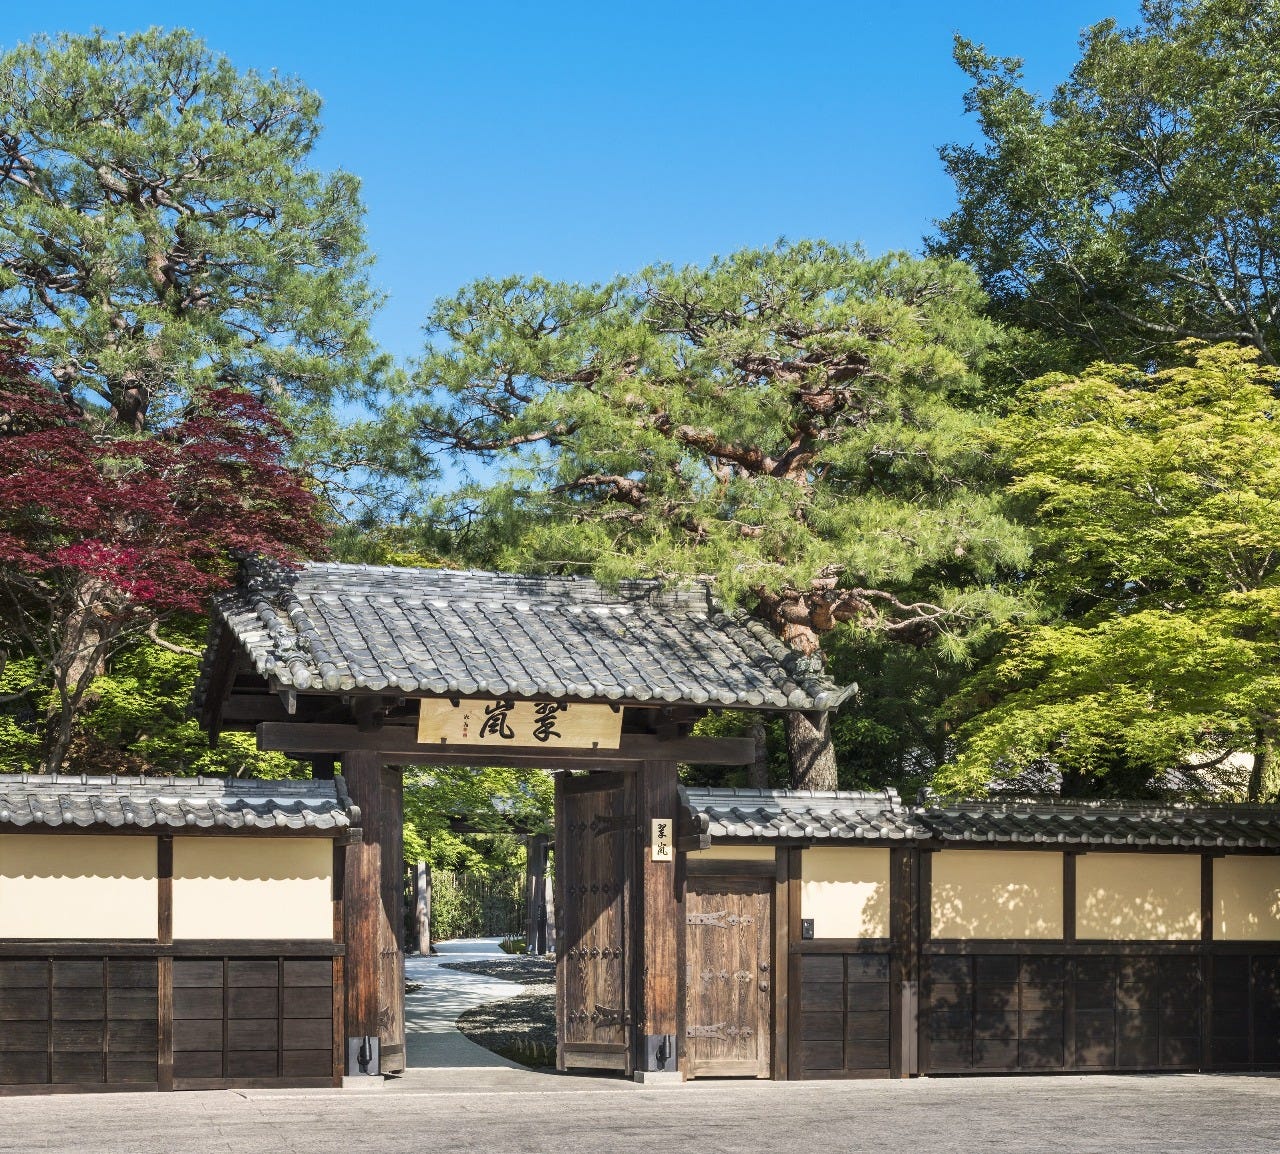 木に囲まれた日本邸宅の門と「茶寮 八翠」の看板